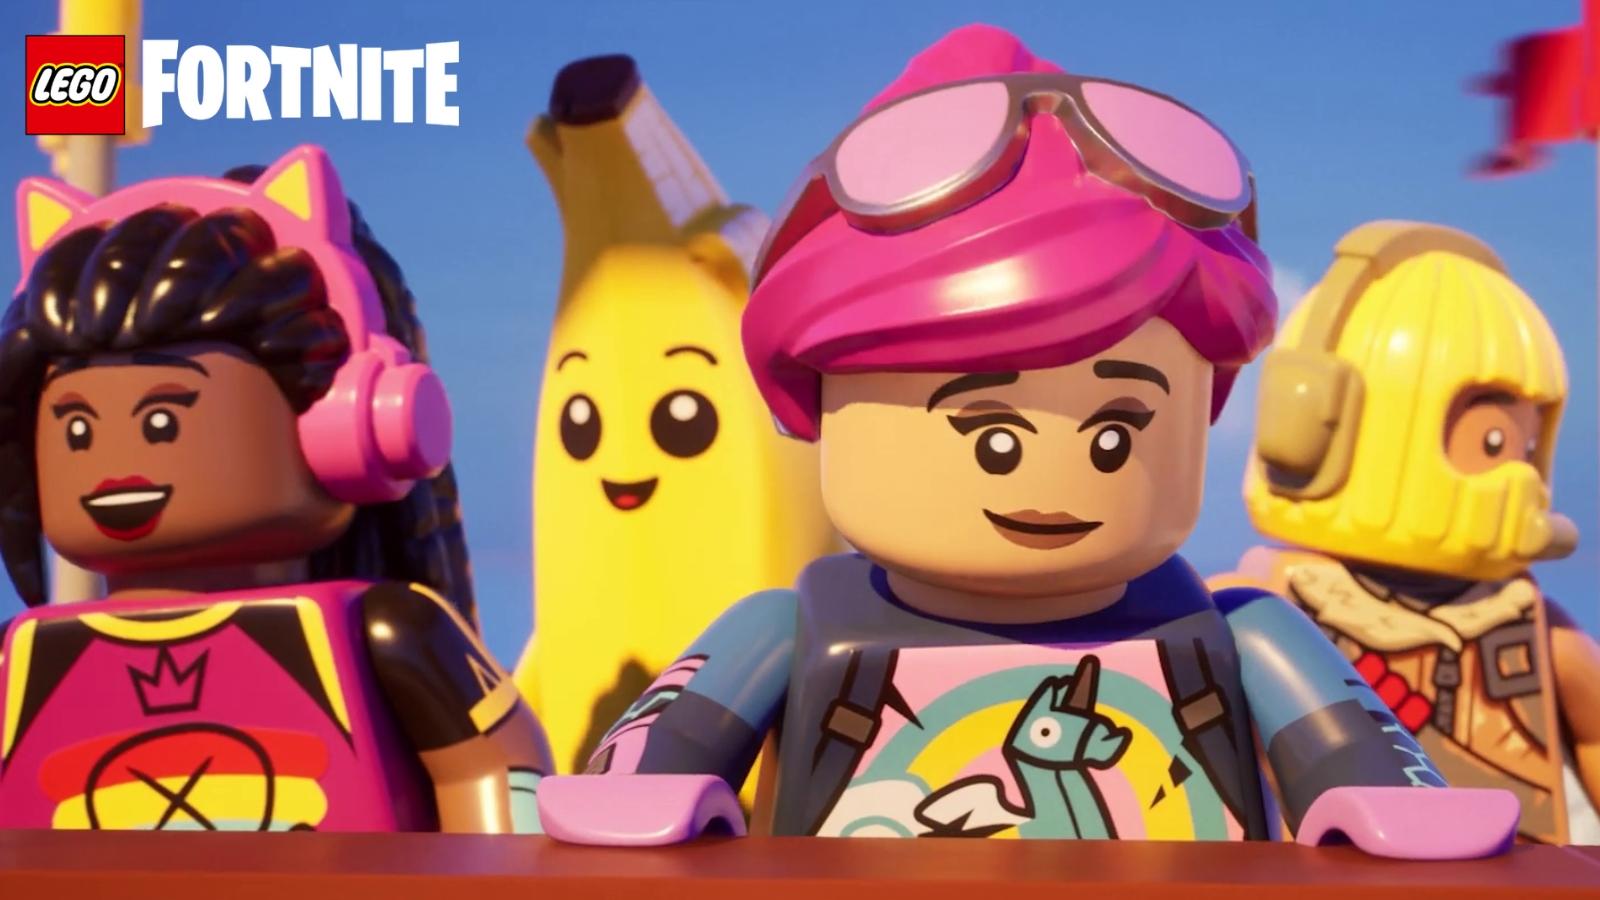 LEGO Fortnite Key Trailer art